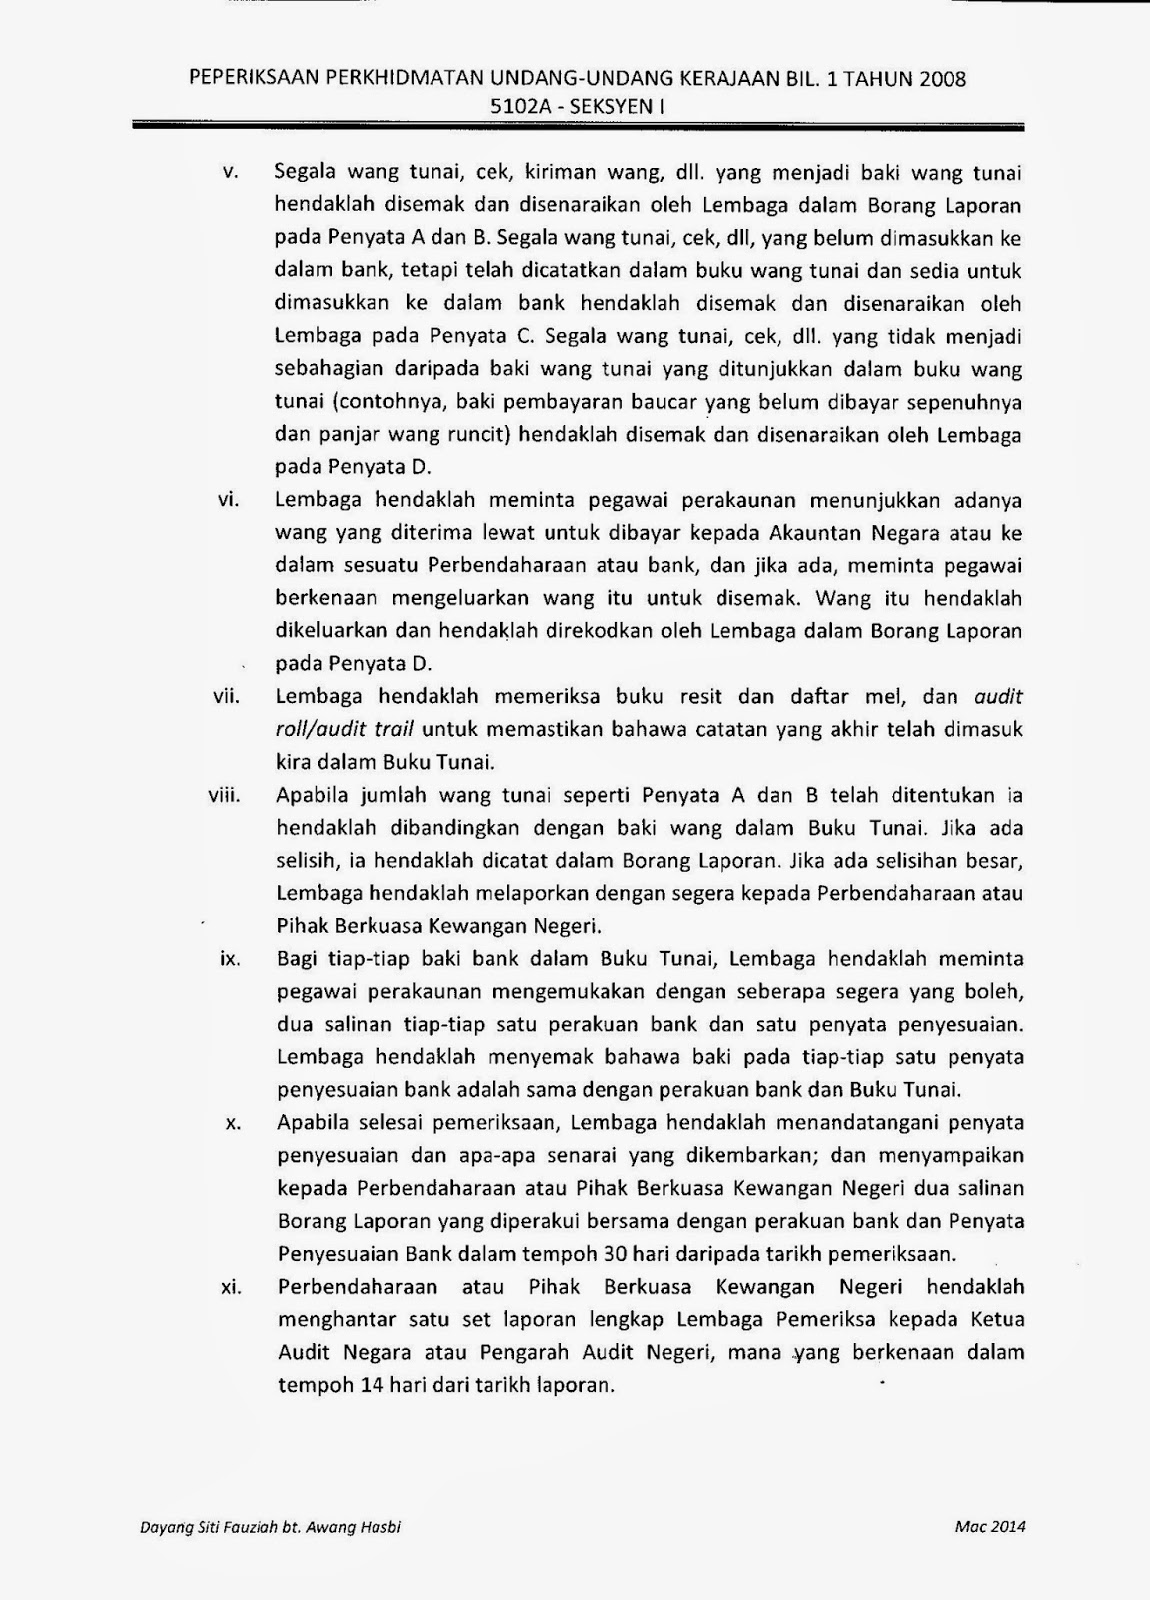 Surat Pekeliling Perkhidmatan Bil.11 Tahun 2008